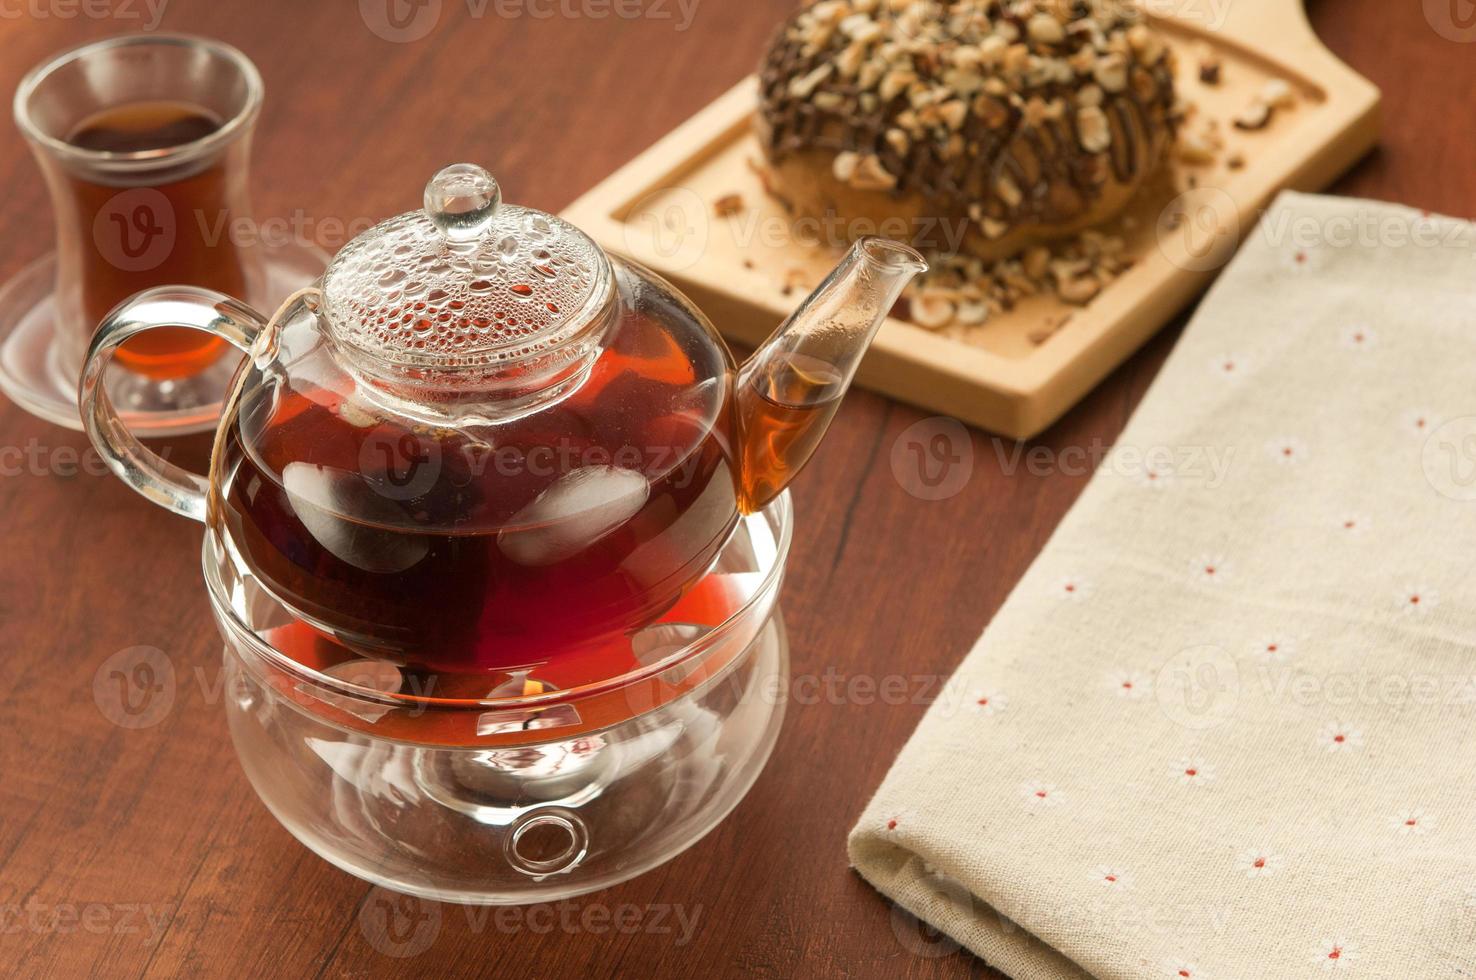 théière et tasse en verre transparent avec du thé photo